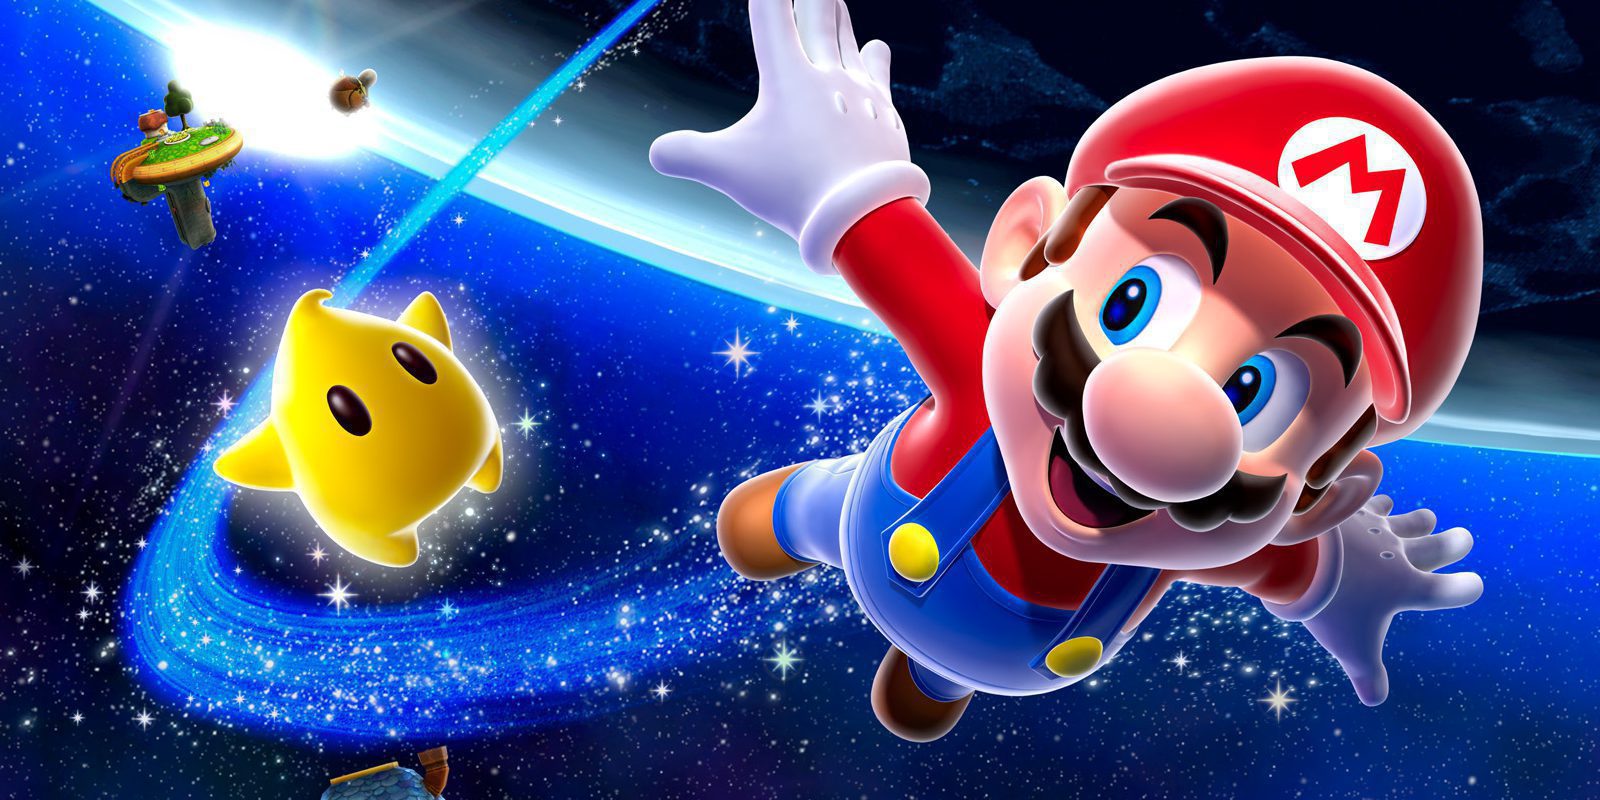 'Super Mario Galaxy', una década del astro rey de Nintendo